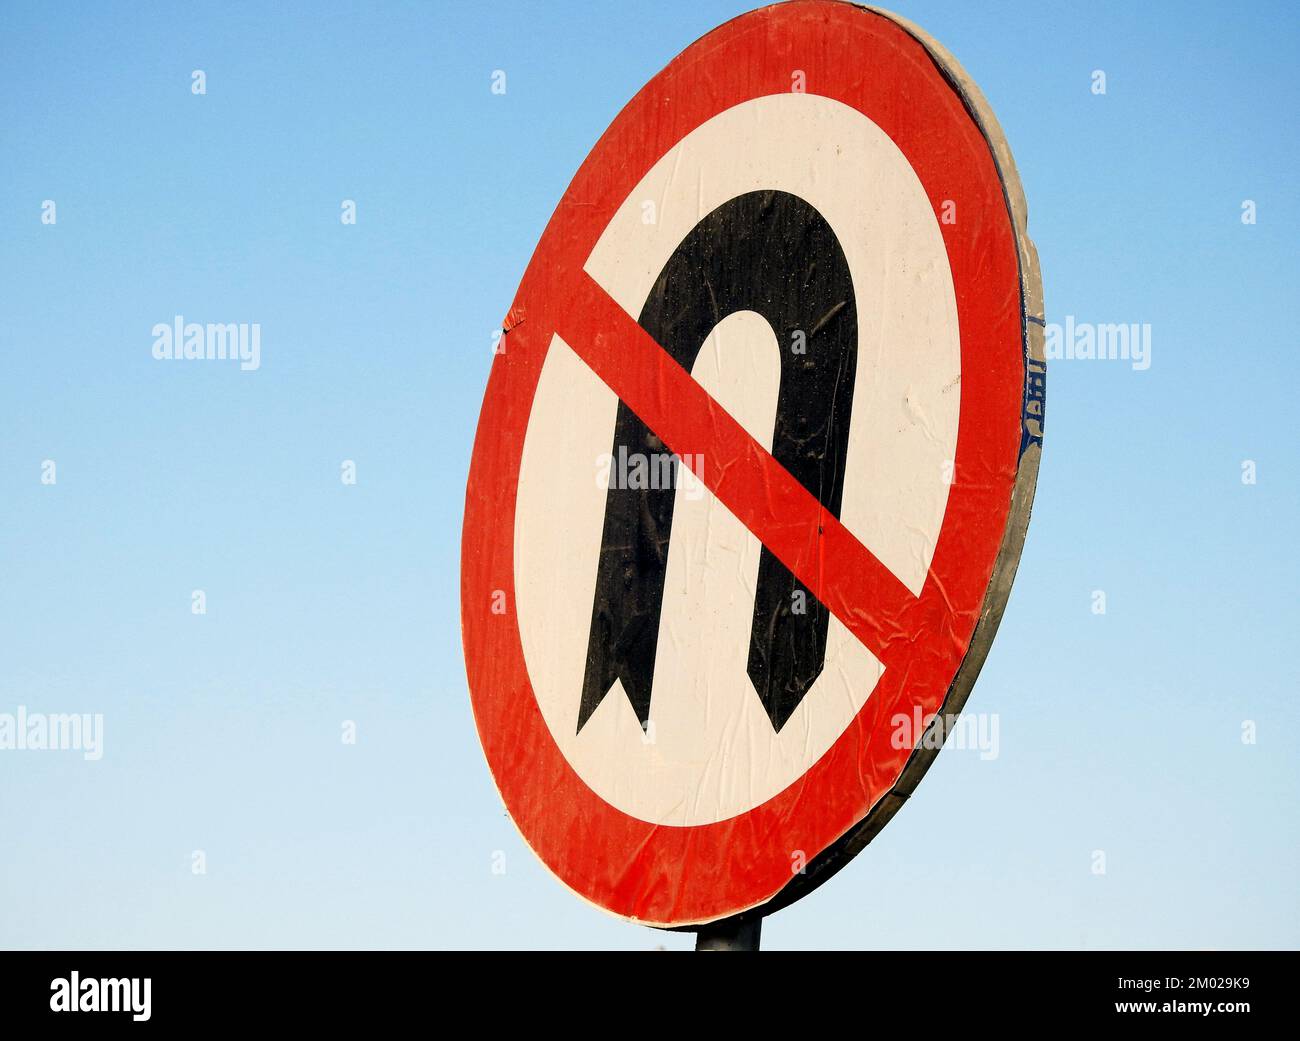 Pas de panneau de demi-tour, un panneau réglementaire affiché aux intersections pour indiquer que le conducteur n'est pas autorisé légalement à faire un demi-tour (un virage sur la route pour aller à l' Banque D'Images